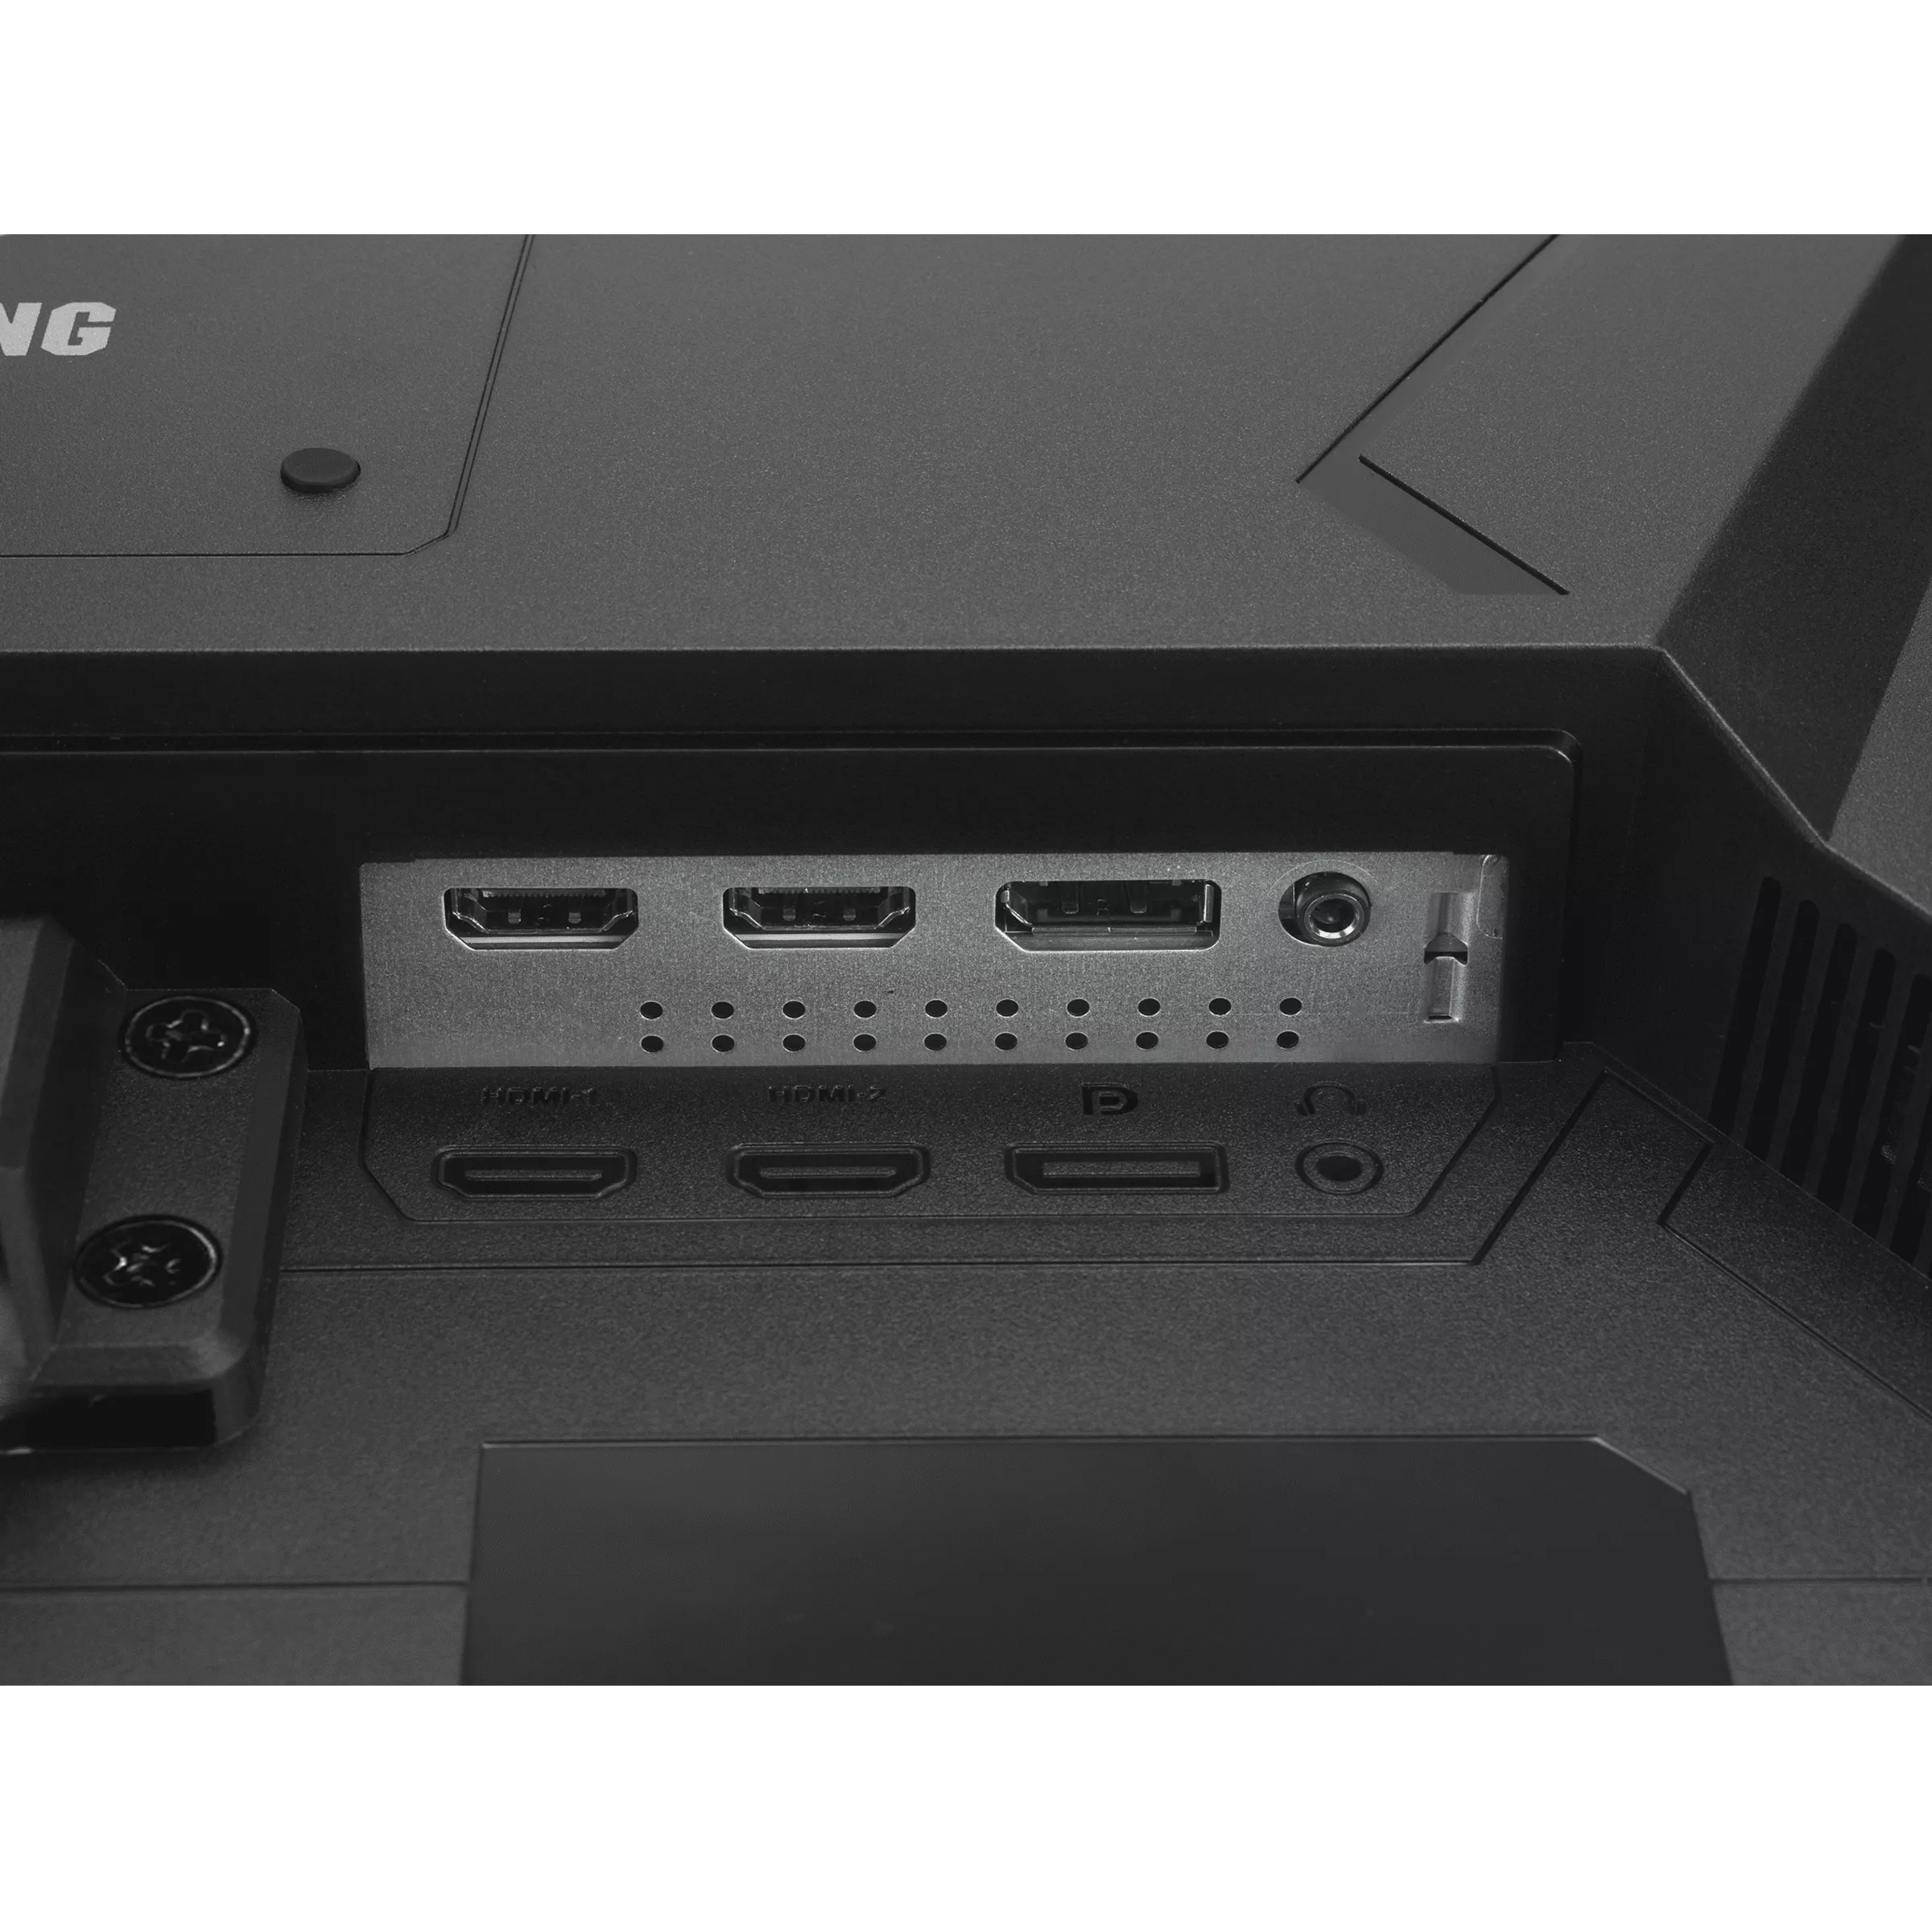 Achat ASUS VG249Q1A 24 TUF Gaming 24p IPS FHD sur hello RSE - visuel 9